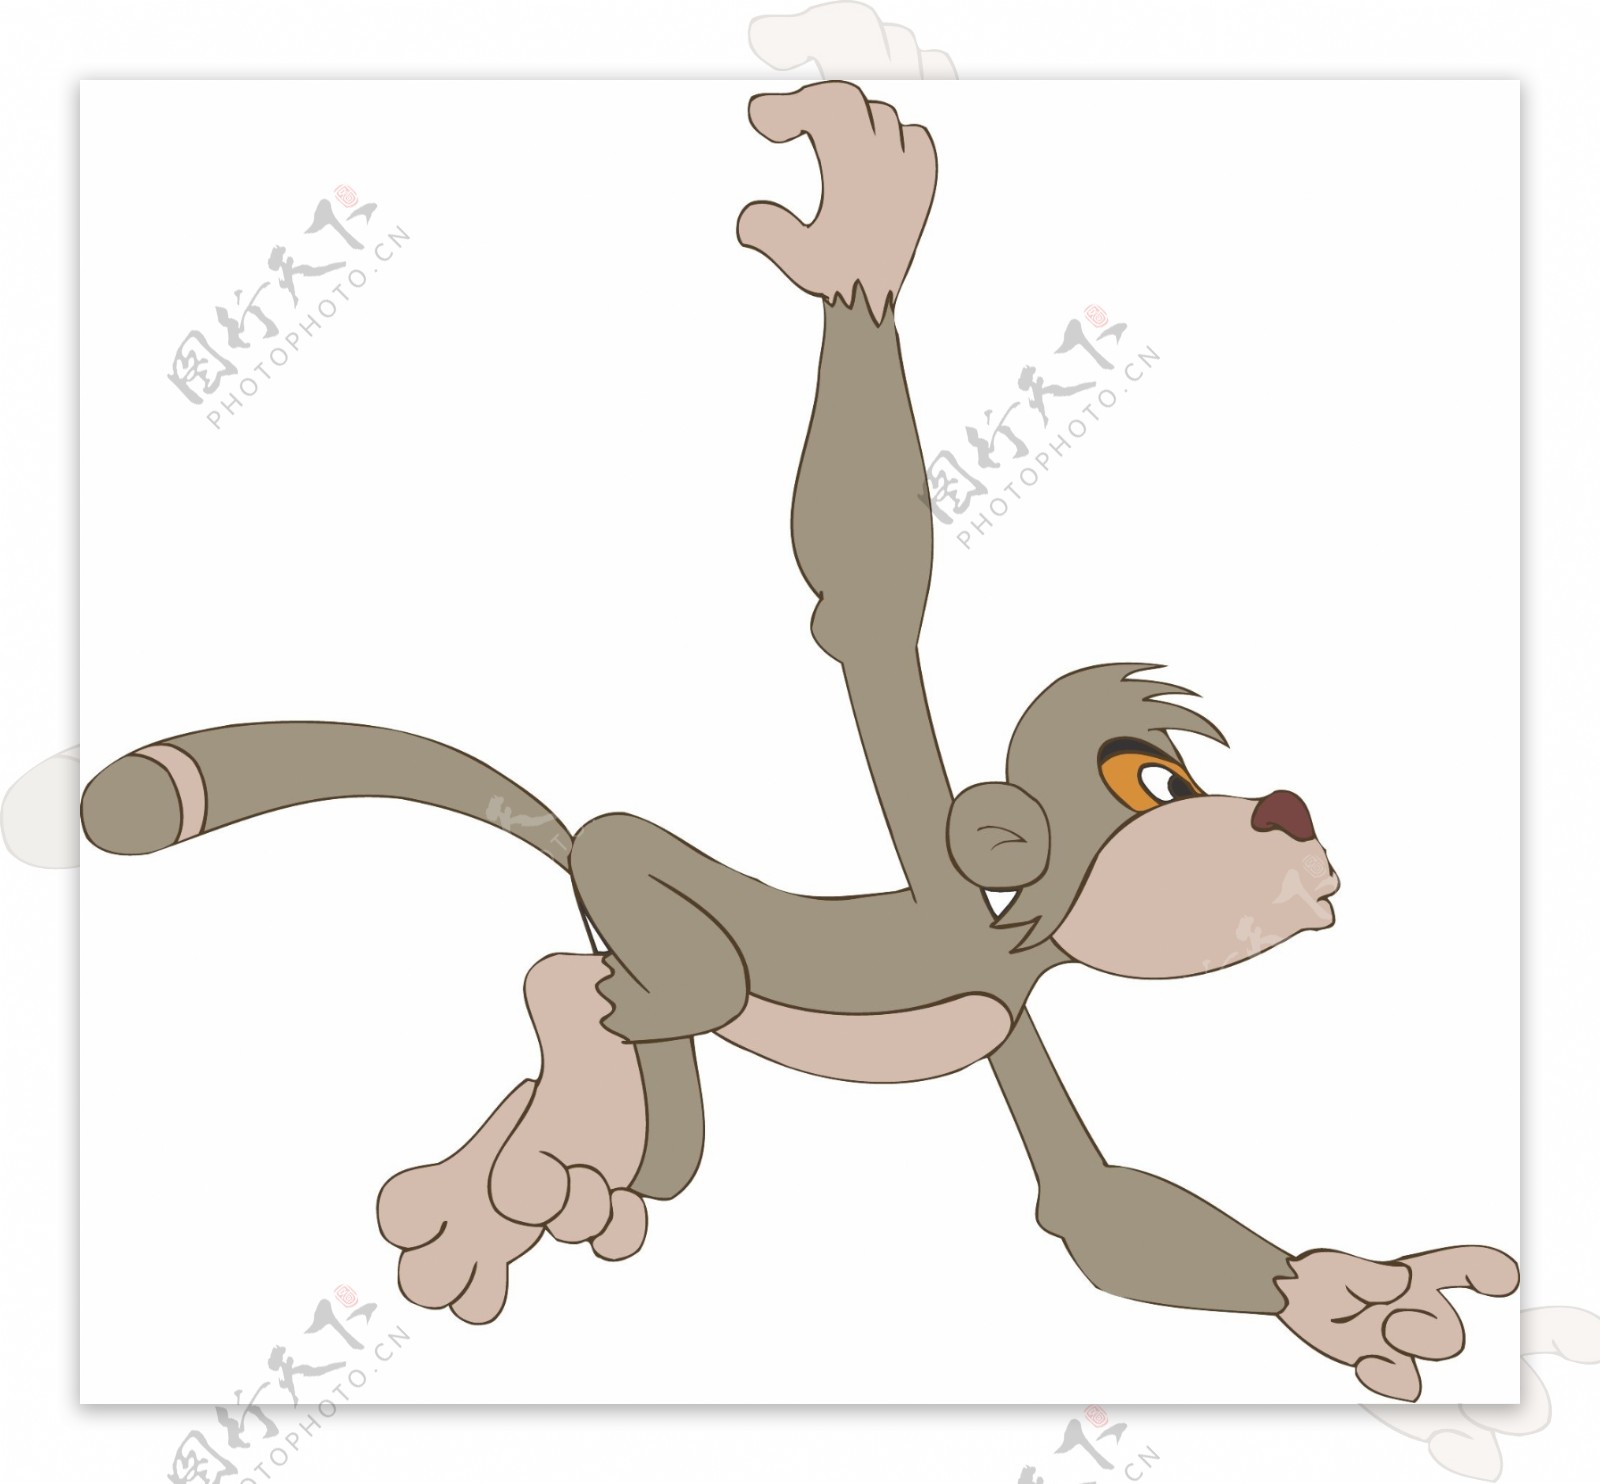 猴子卡通图片